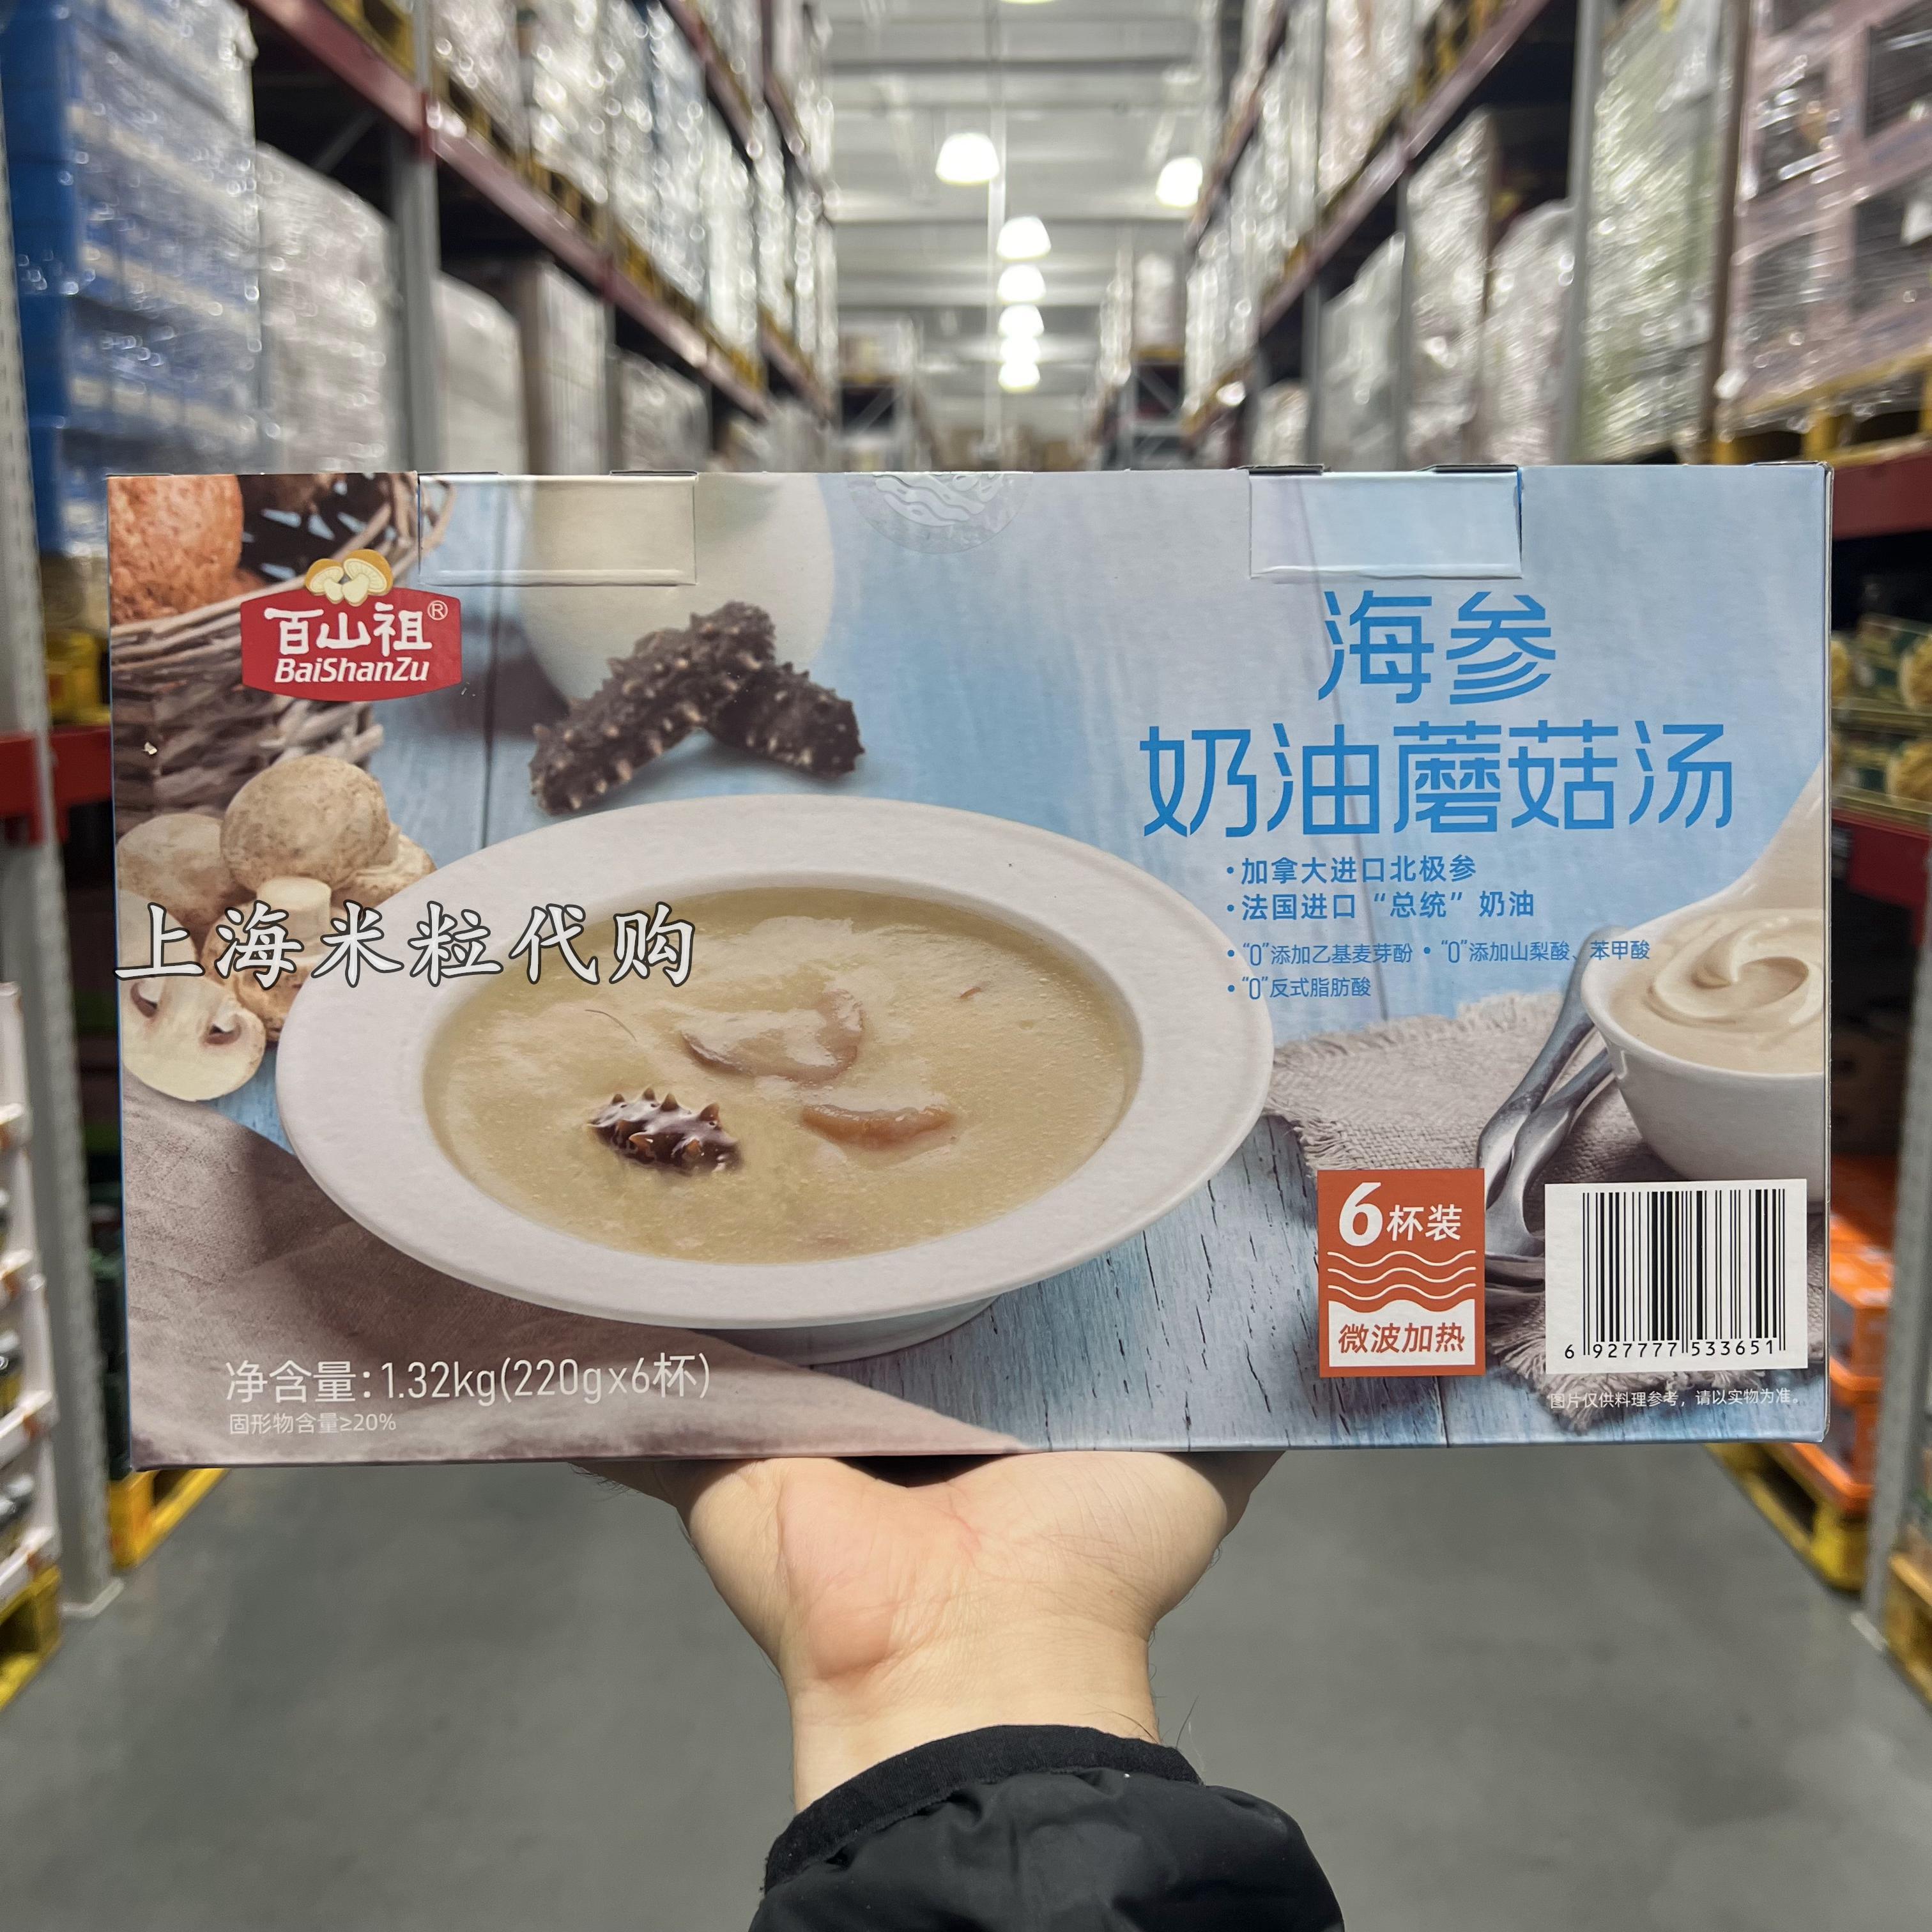 上海山姆代购百山祖海参奶油蘑菇汤1.32kg速食汤含进口北极参原材